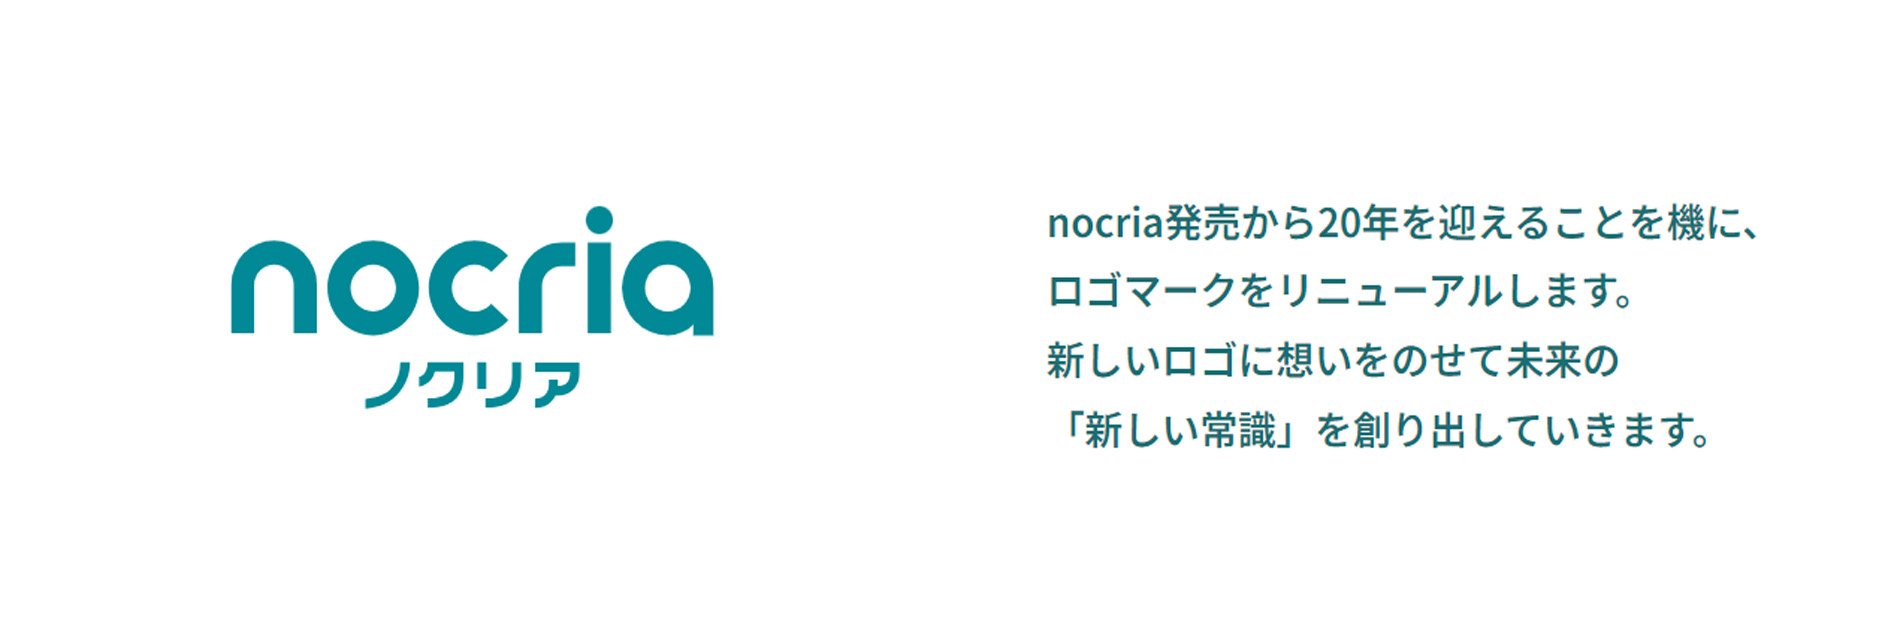 nocria| nocria発売から20年を迎えることを機に、ロゴマークをリニューアルします。新しいロゴに想いをのせて未来の「新しい常識」を作り出していきます。